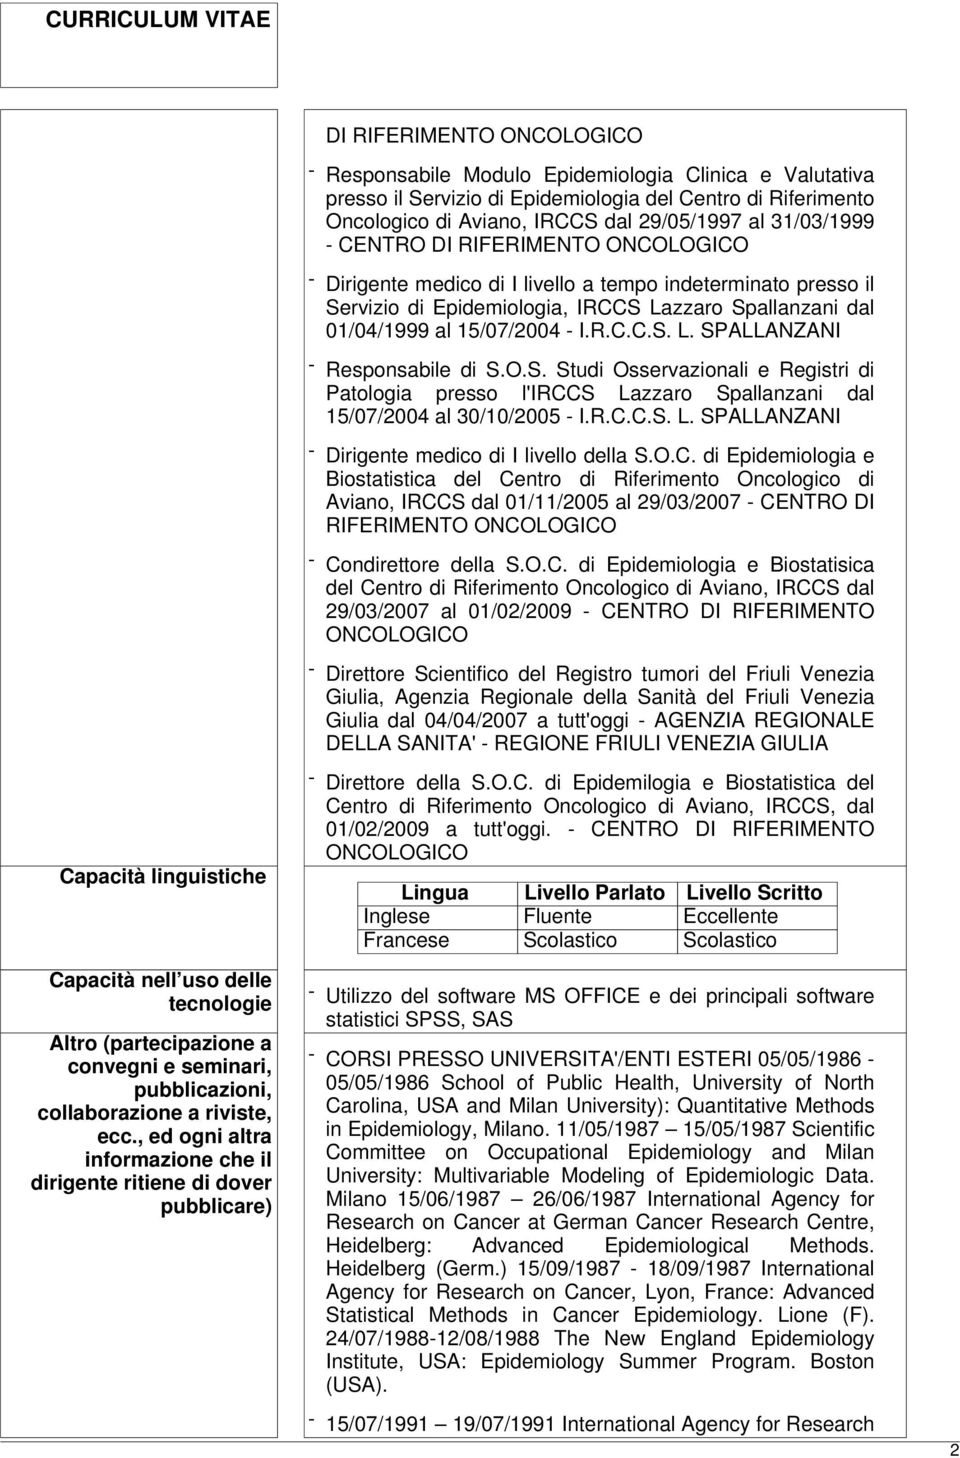 O.S. Studi Osservazionali e Registri di Patologia presso l'irccs Lazzaro Spallanzani dal 15/07/2004 al 30/10/2005 - I.R.C.